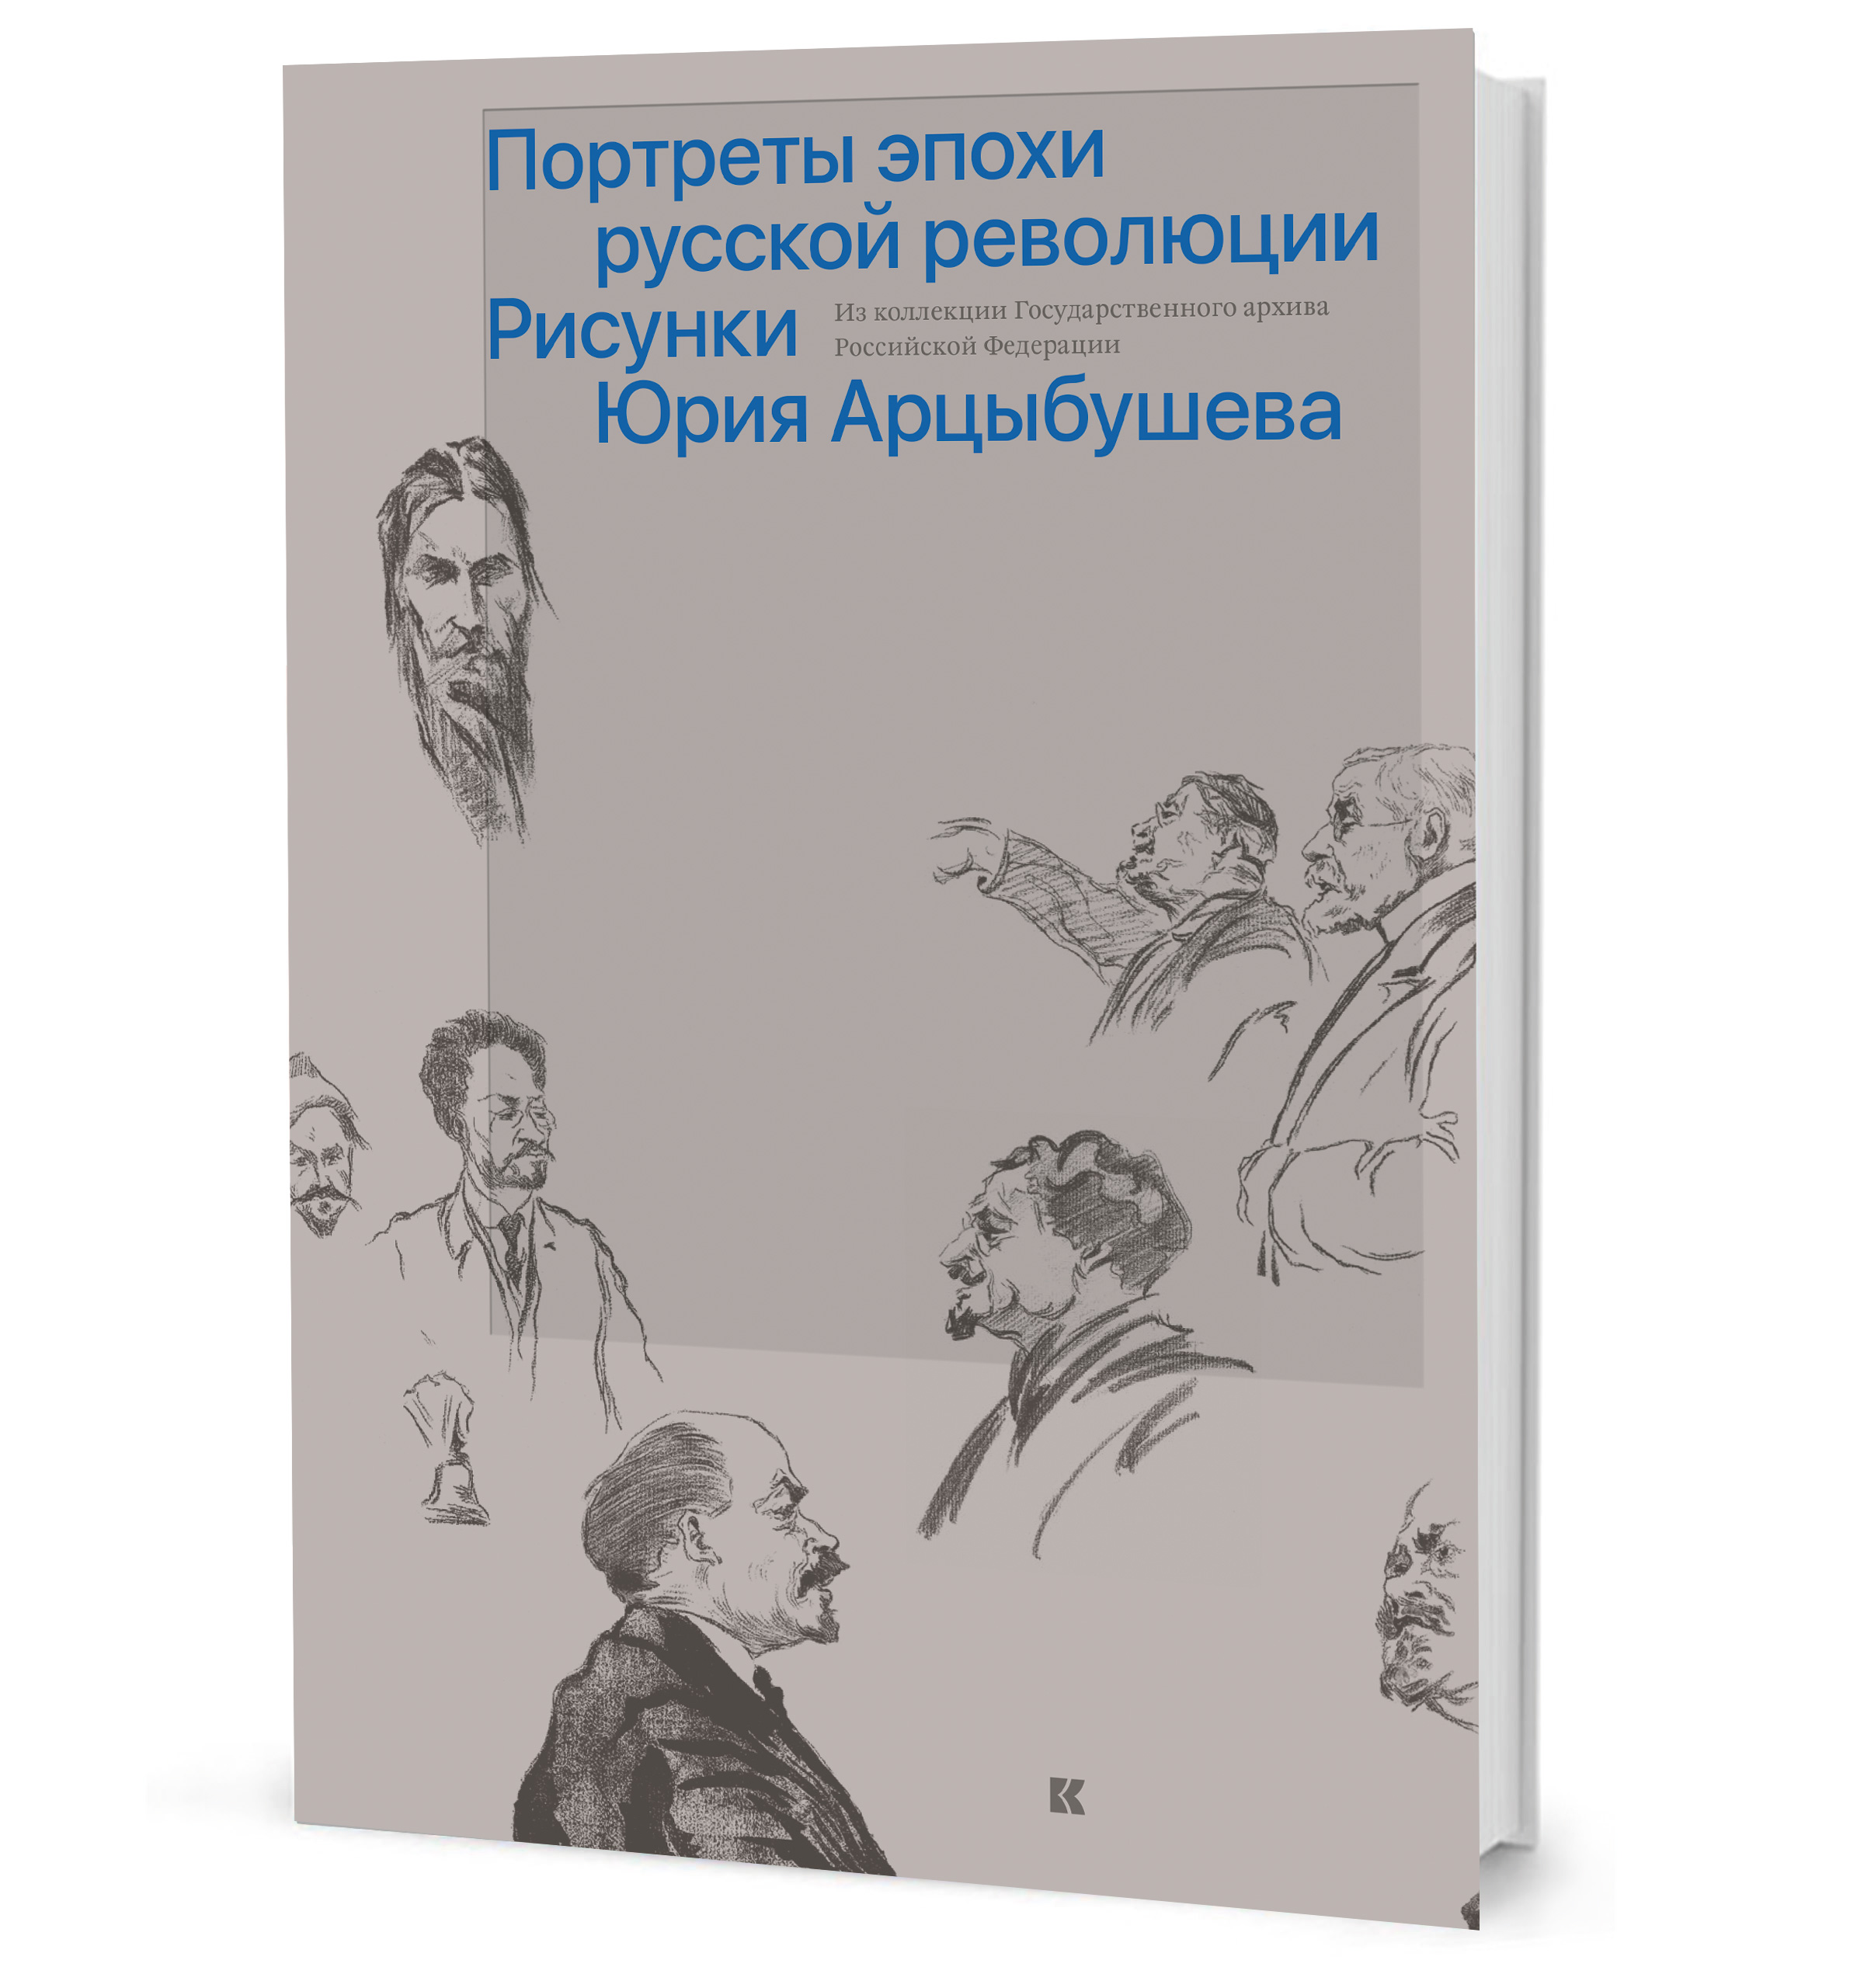 Bolshoy teatrmuzeum cover